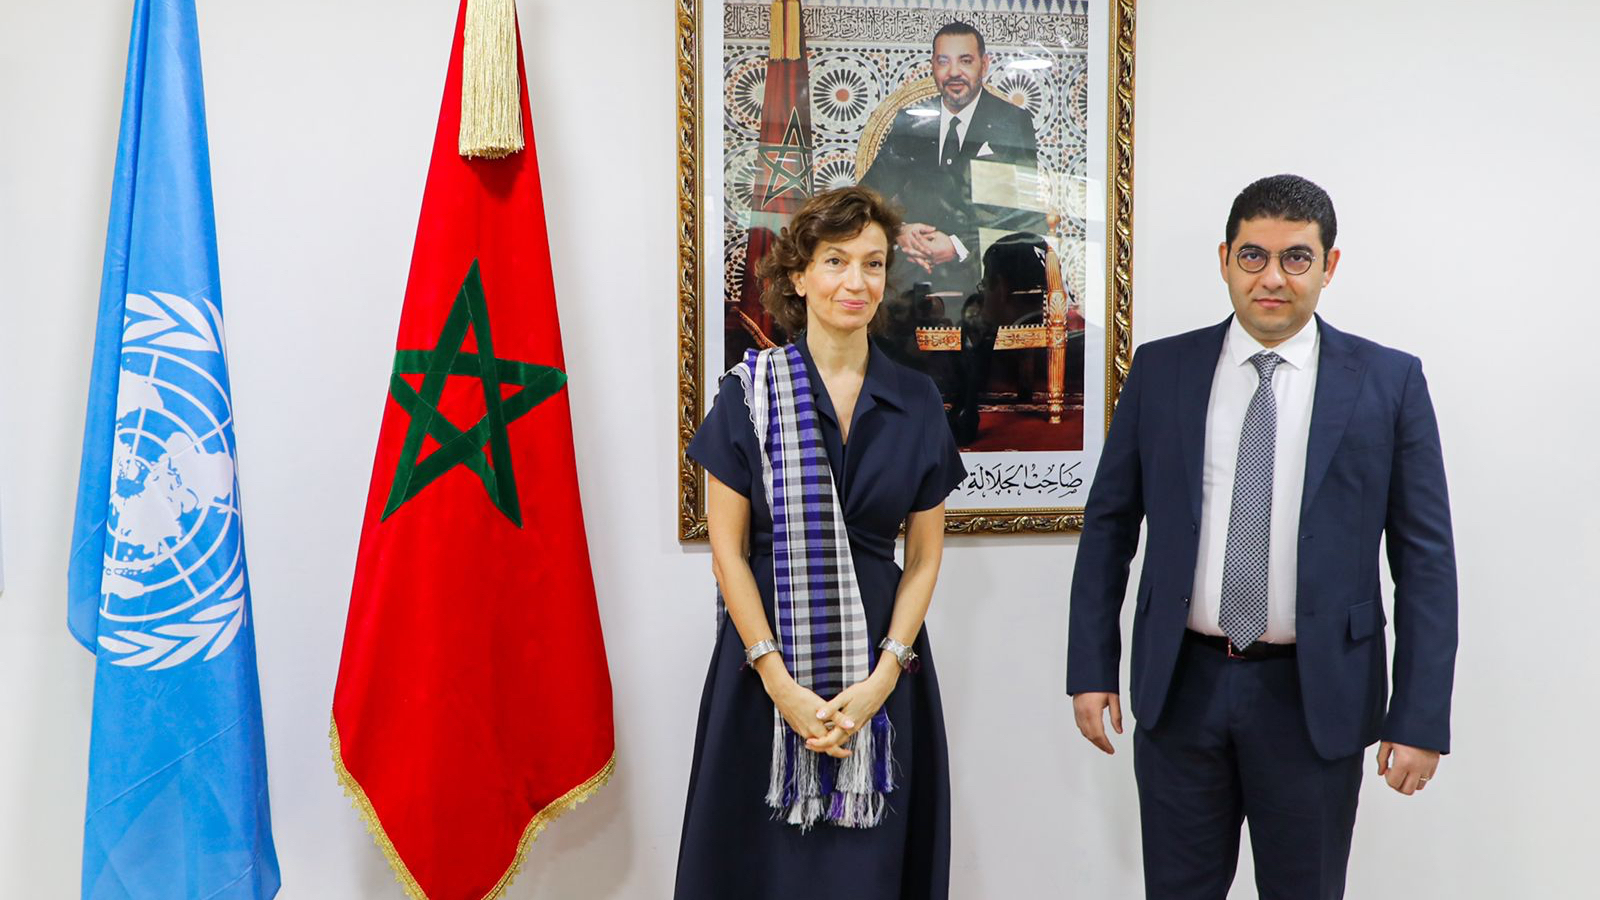 Audrey Azoulay, directrice de l'UNESCO, lors de la visite au Maroc en mars 2022 et Mehdi Bensaïd, ministre de la Culture, vendredi 25 mars 2022.
